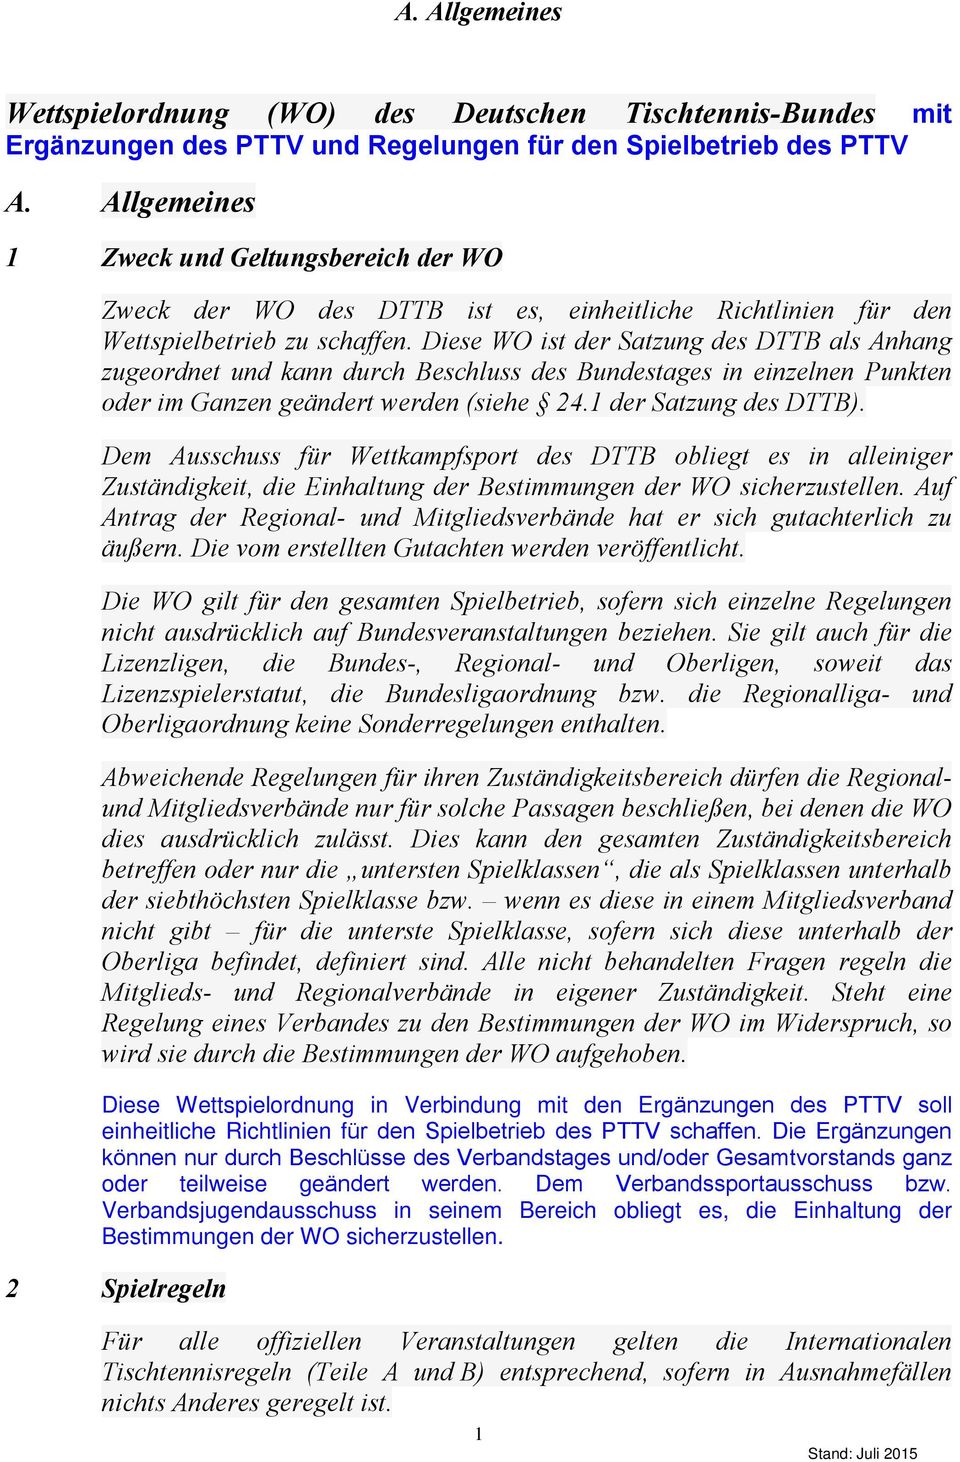 Diese WO ist der Satzung des DTTB als Anhang zugeordnet und kann durch Beschluss des Bundestages in einzelnen Punkten oder im Ganzen geändert werden (siehe 24.1 der Satzung des DTTB).